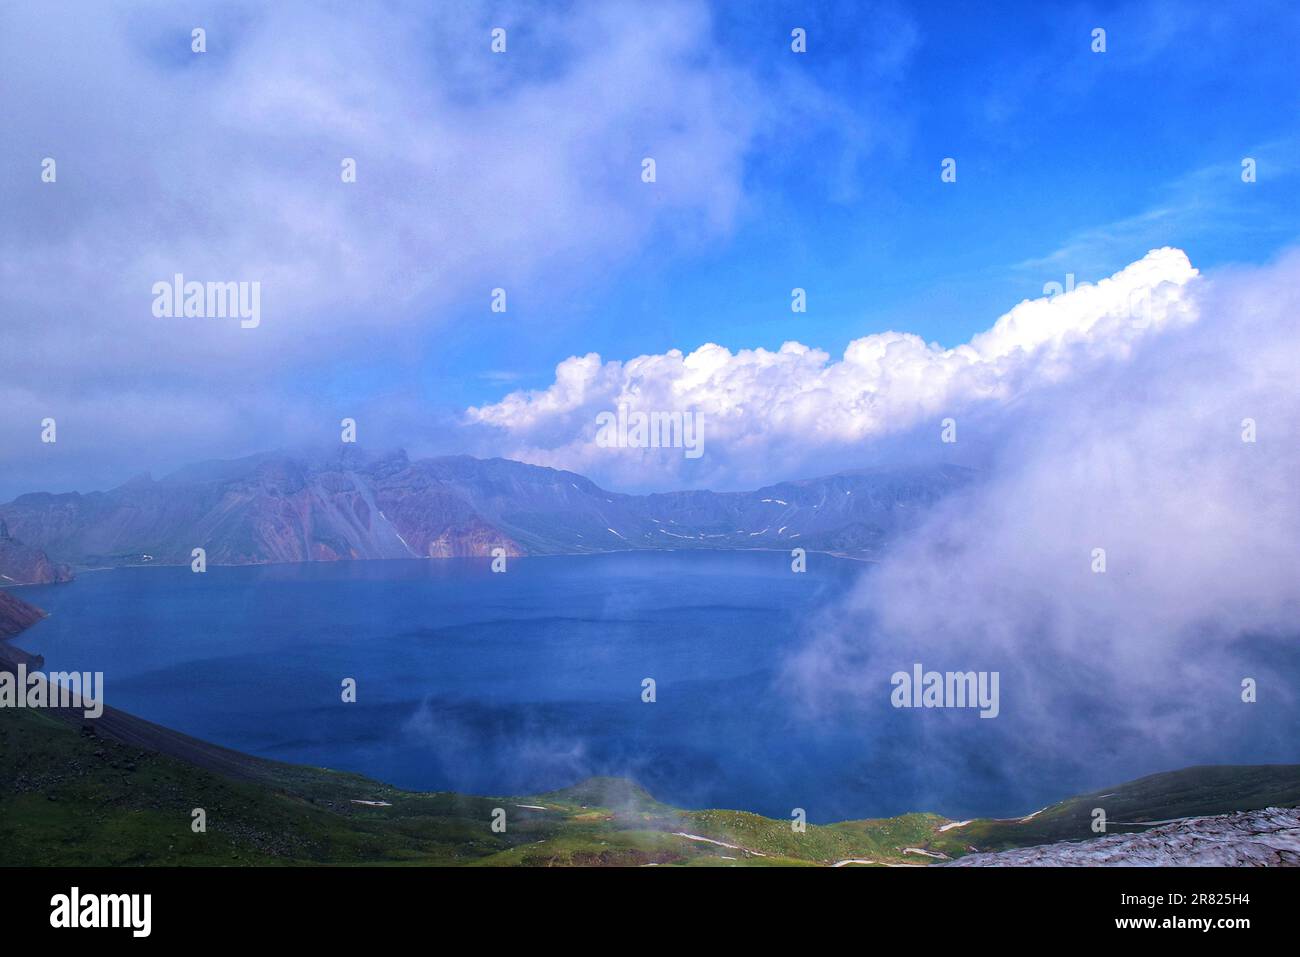 Découvrez la tranquillité dans cette majestueuse scène de nature avec des arbres, un lac, des montagnes, un ciel bleu hypnotisant. Une vue captivante de la nature sauvage intacte Banque D'Images